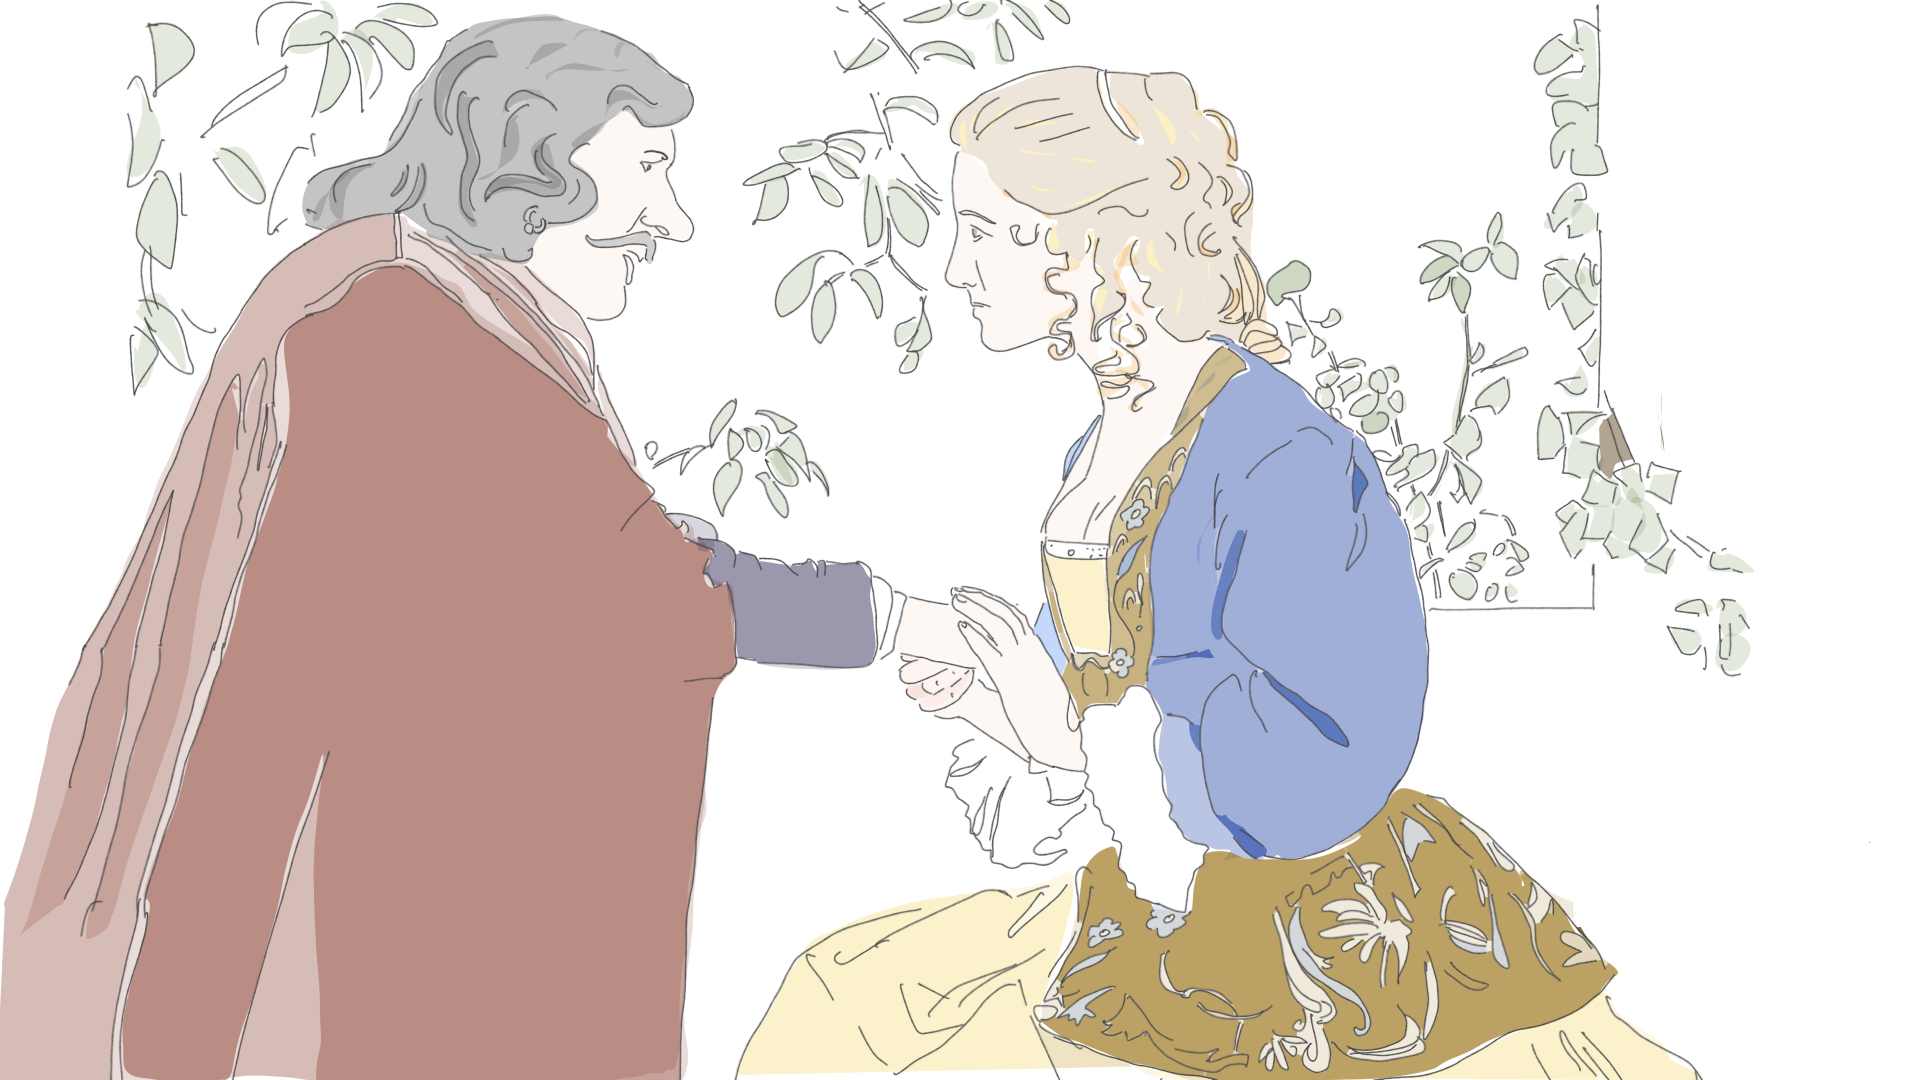 Ce que Cyrano nous apprend de l'idéal romantique français